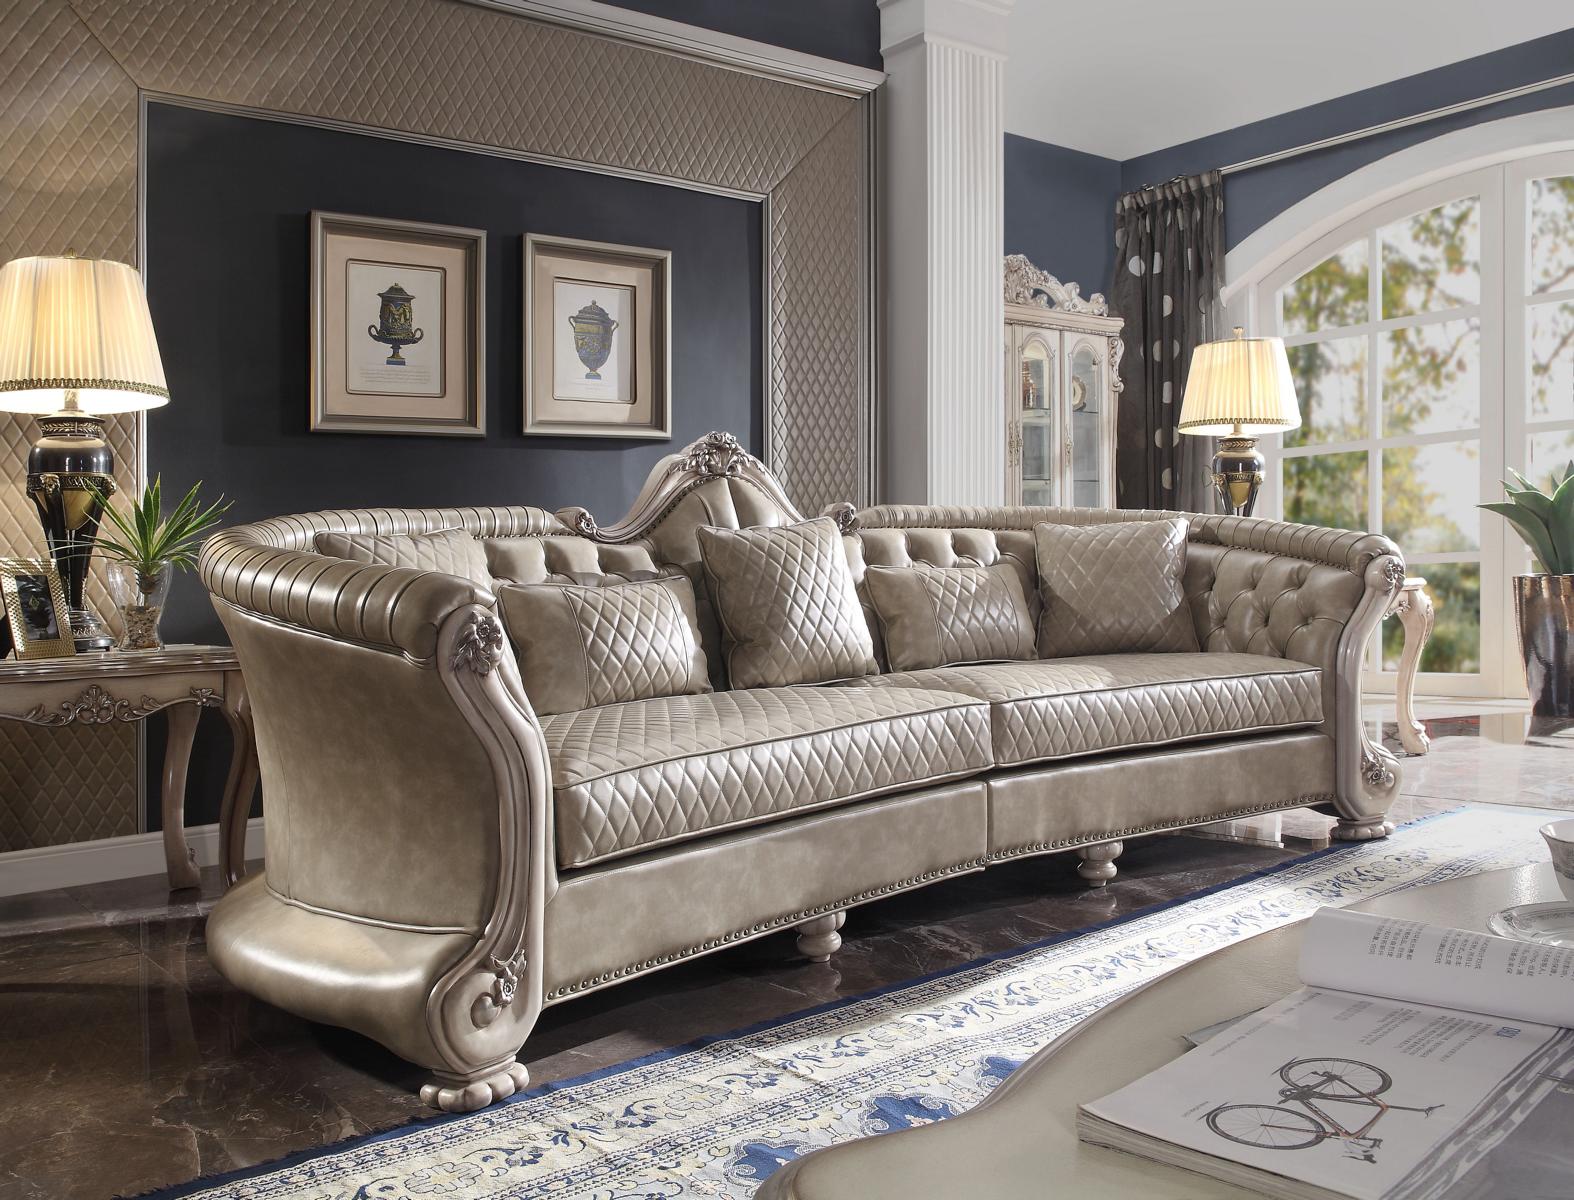 Big xxl Sofa Couch klassische Möbel Polster Sofas 4 Sitzer Barock Textil Couchen